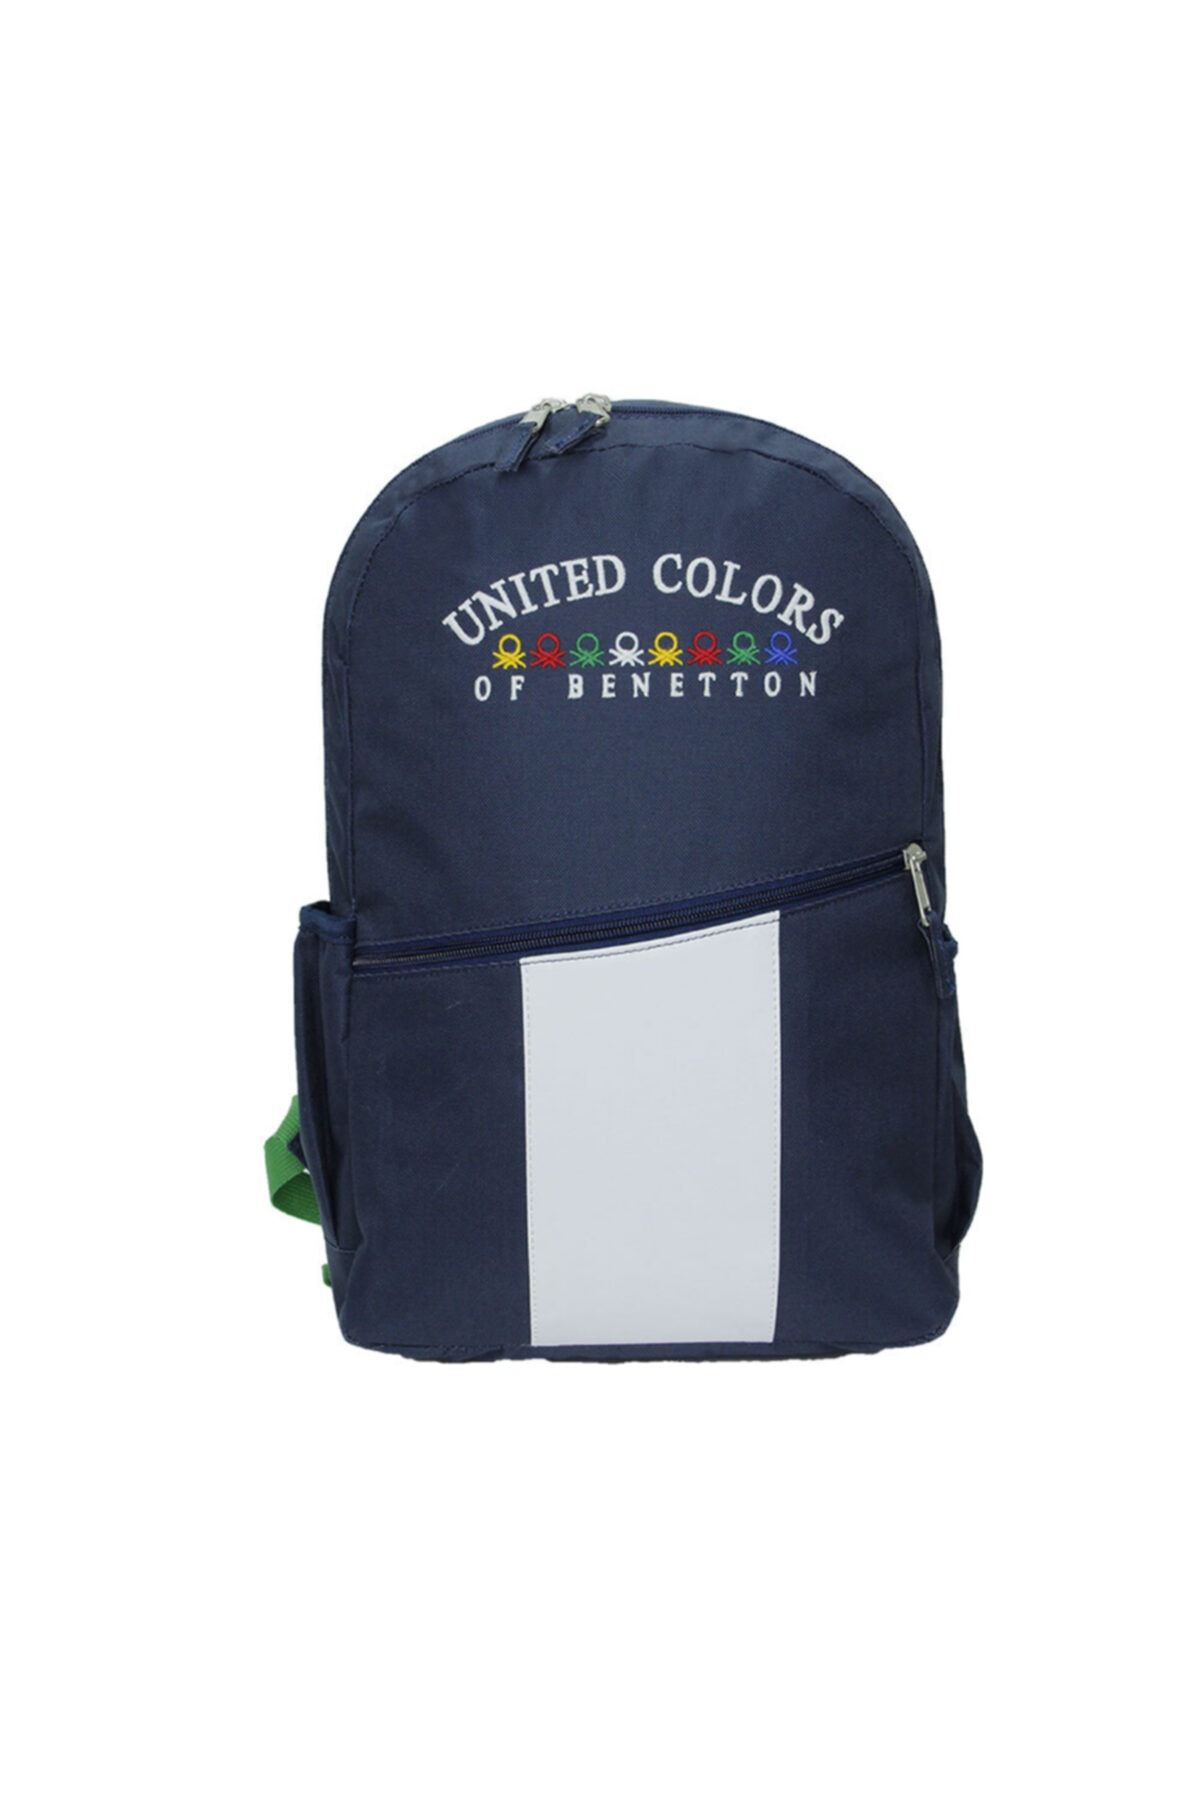 Benetton United Colors Of Sırt Okul Çantası 70054 Mavi